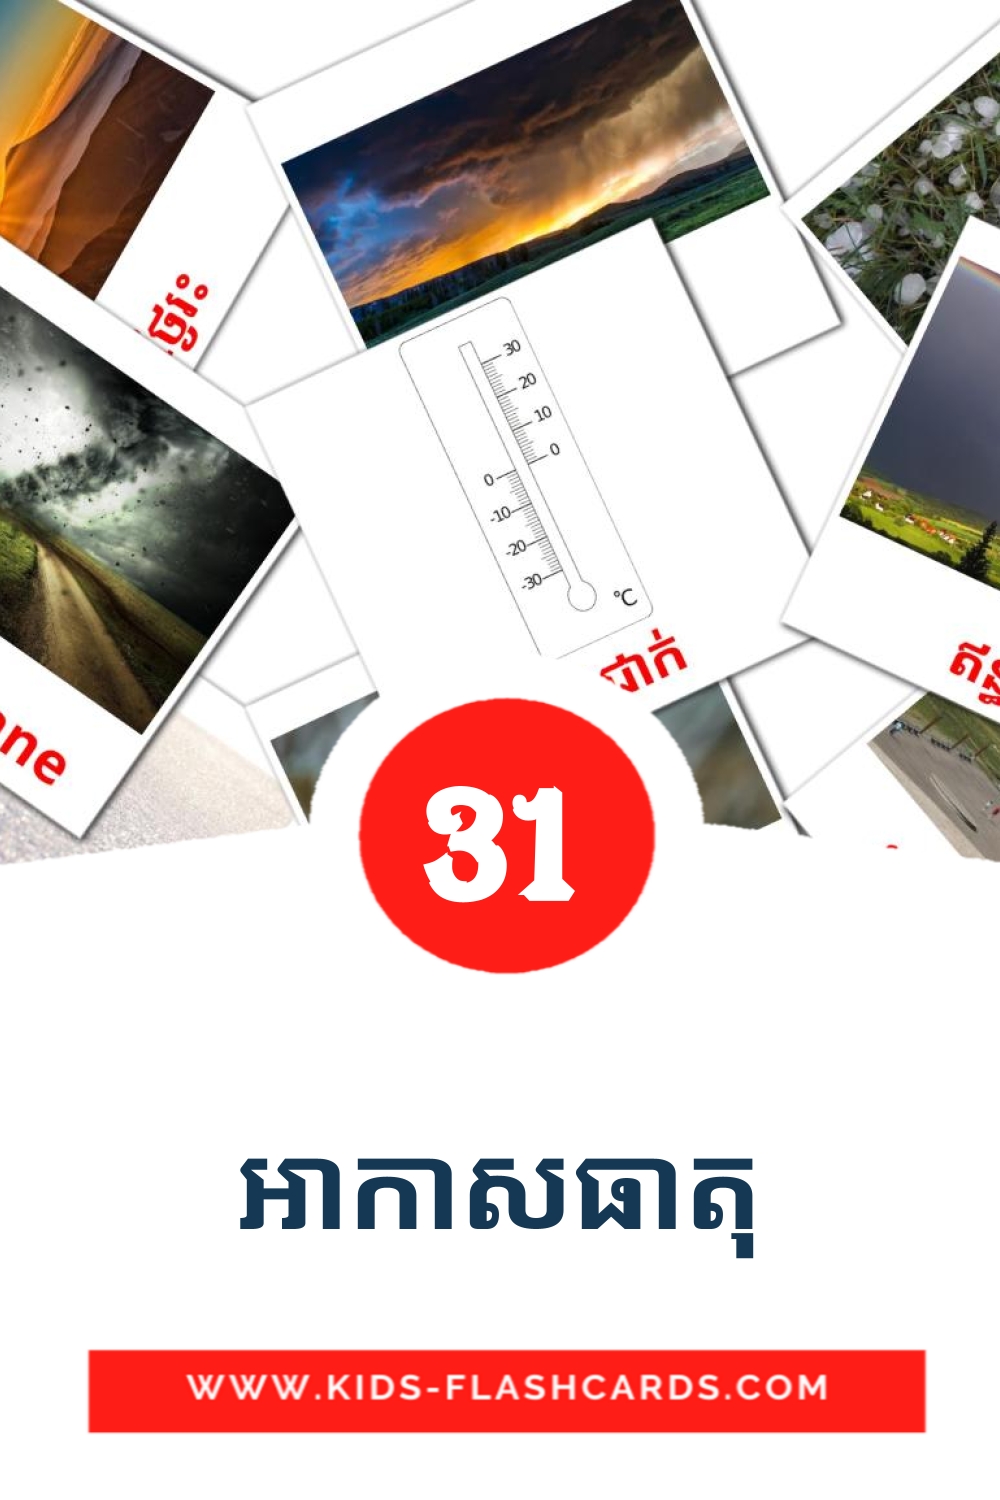 31 tarjetas didacticas de អាកាសធាតុ para el jardín de infancia en khmer